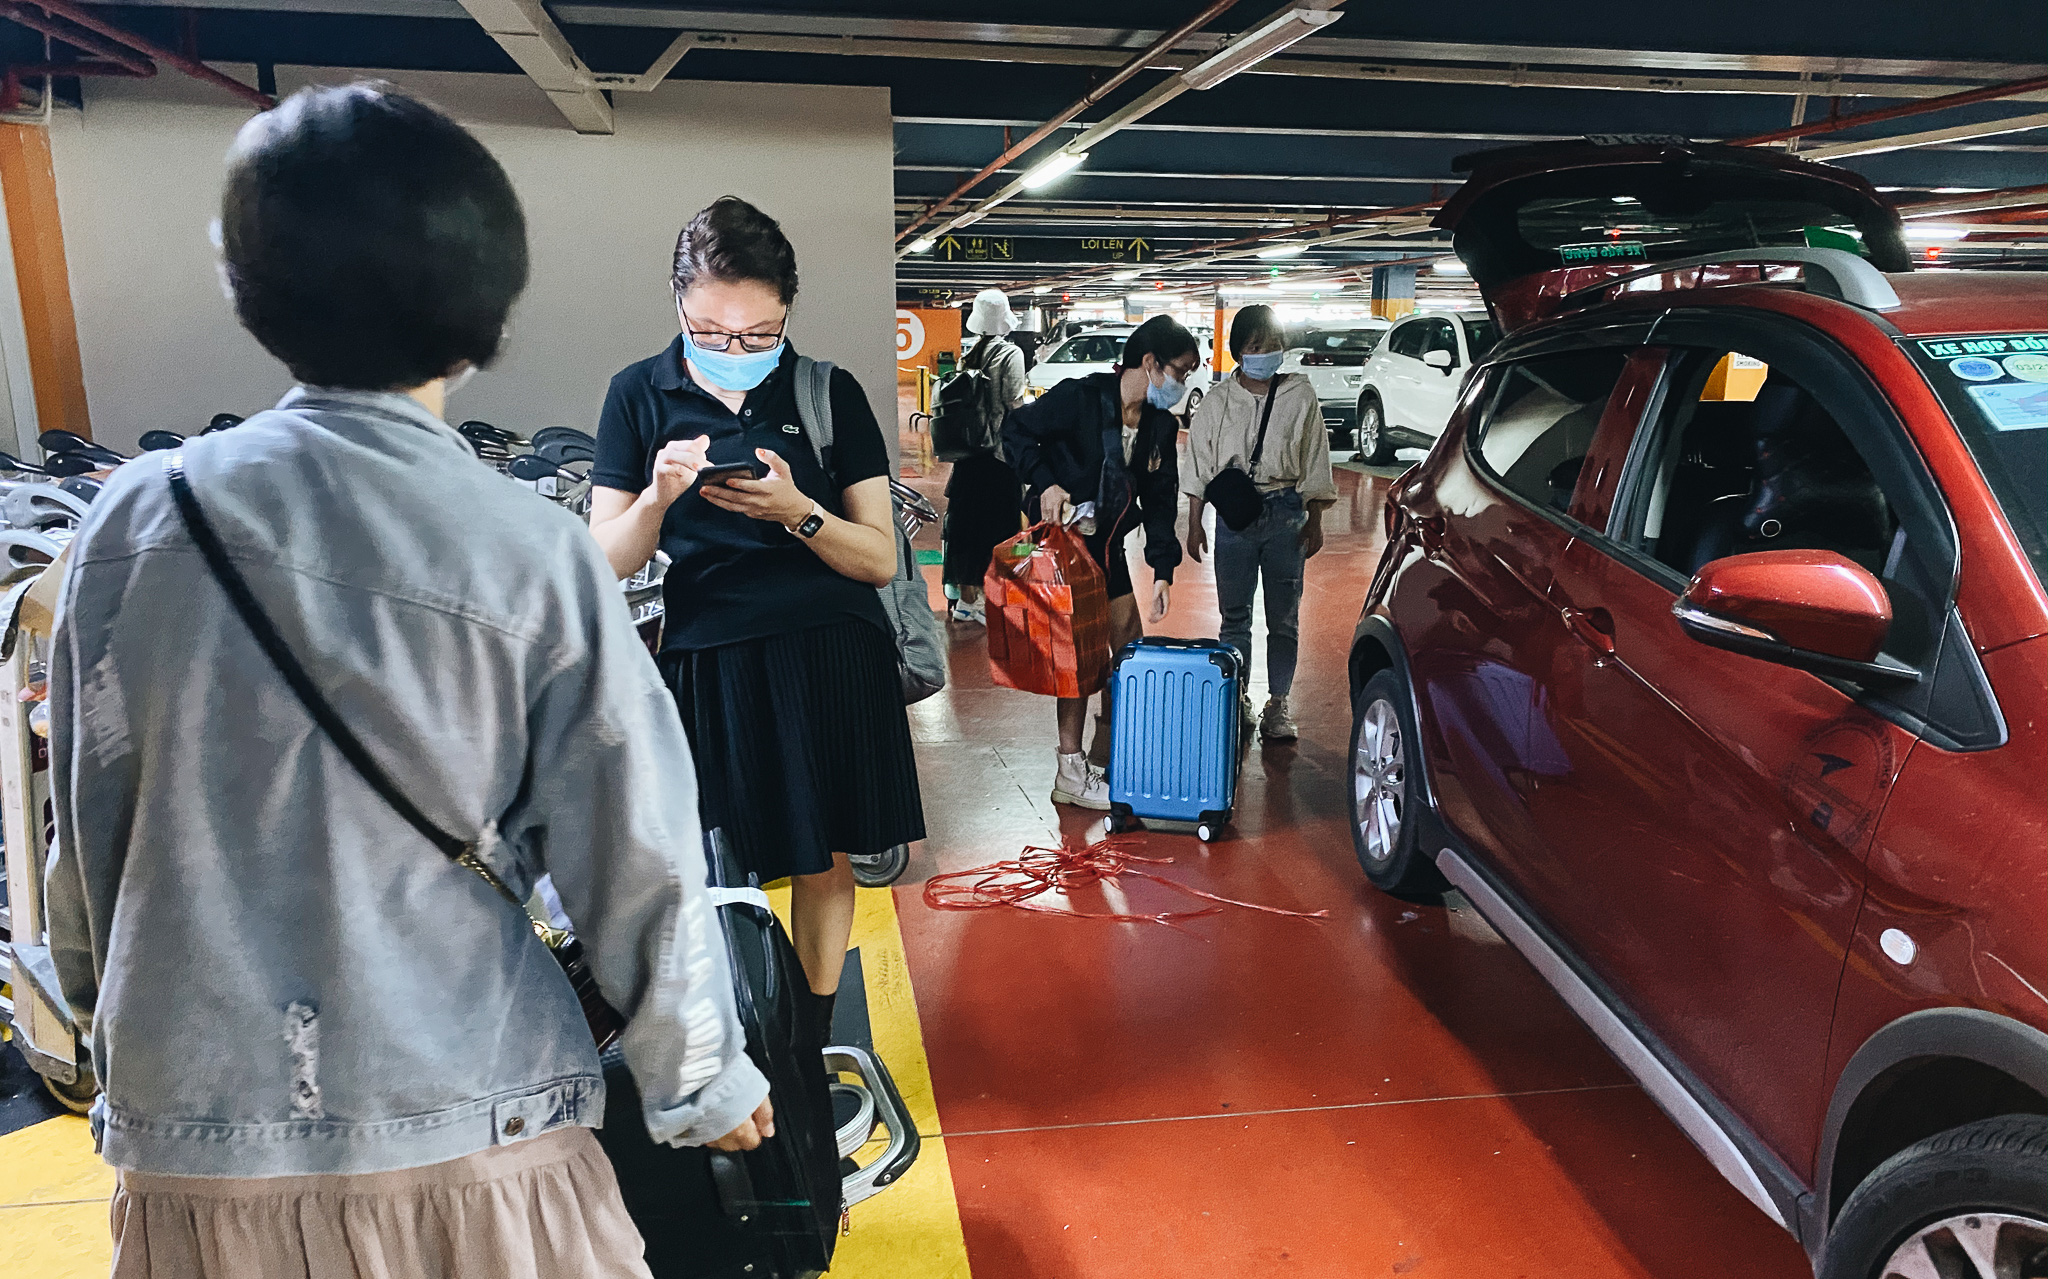 Tân Sơn Nhất phân làn, hành khách và tài xế công nghệ mỏi mắt tìm nhau giữa các tầng ở nhà giữ xe: "Chờ cả tiếng lại phải trả thêm 25.000 đồng"